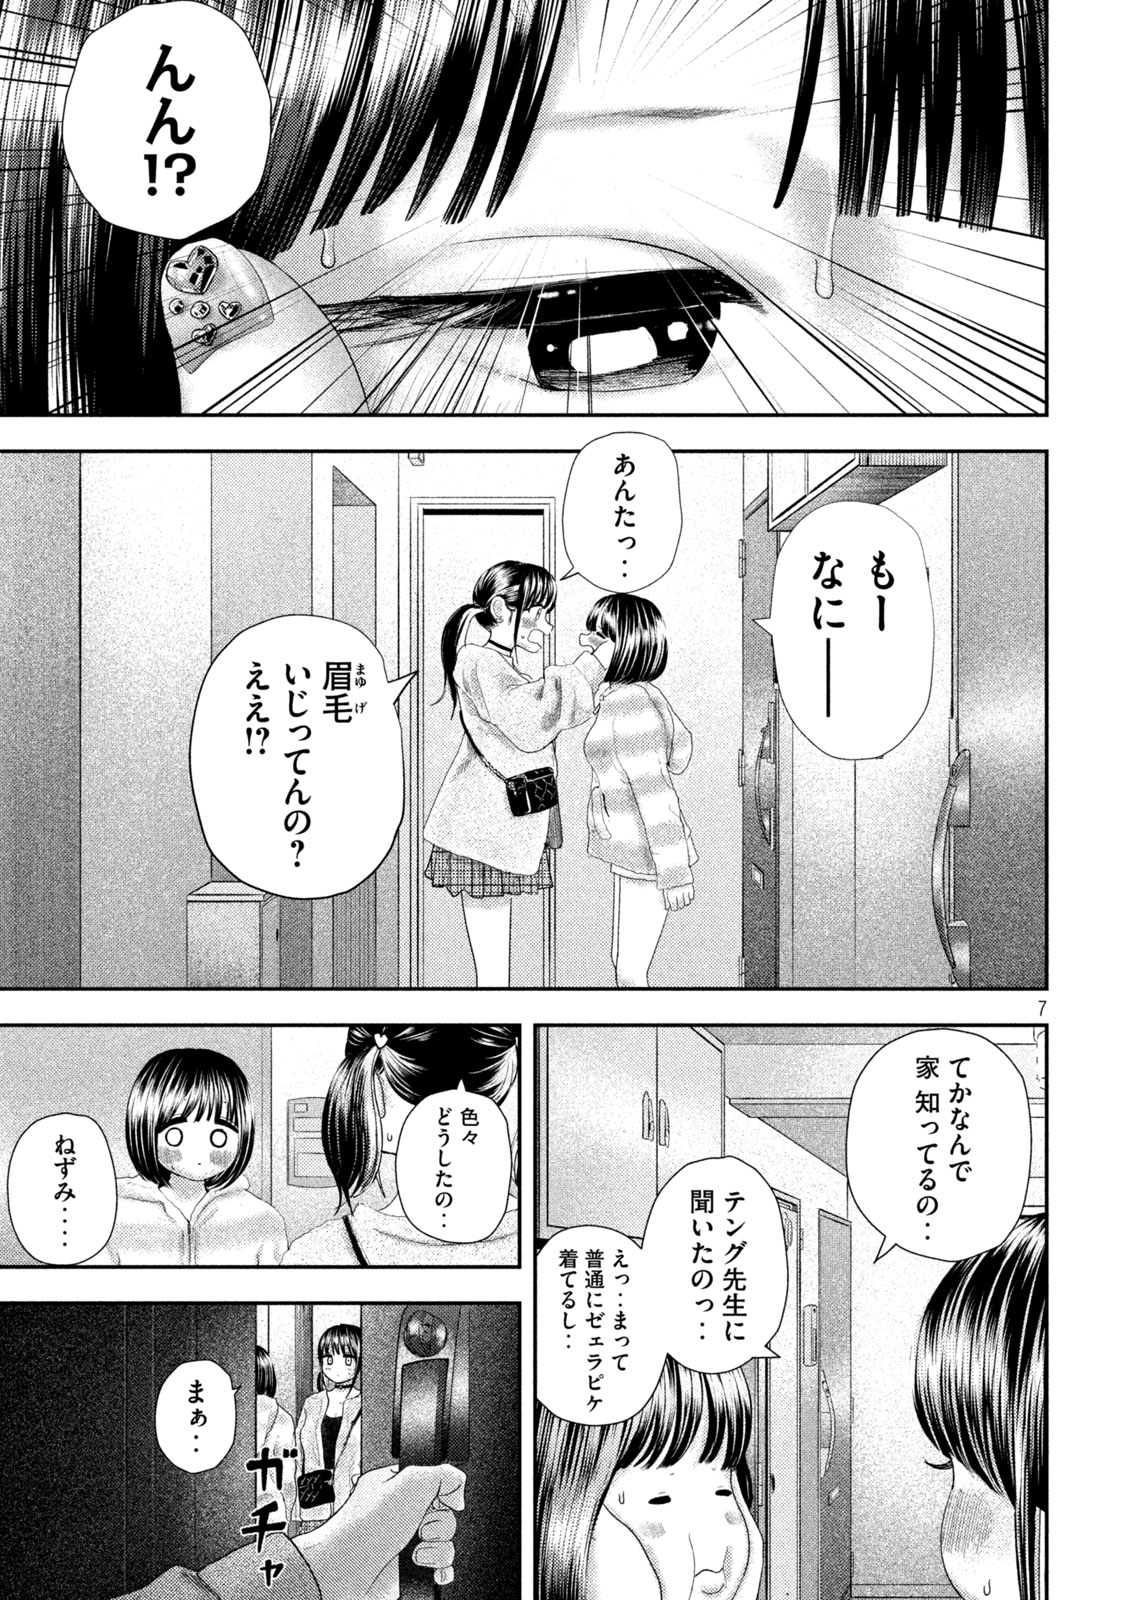 Nezumi no Koi - Chapter 30 - Page 7